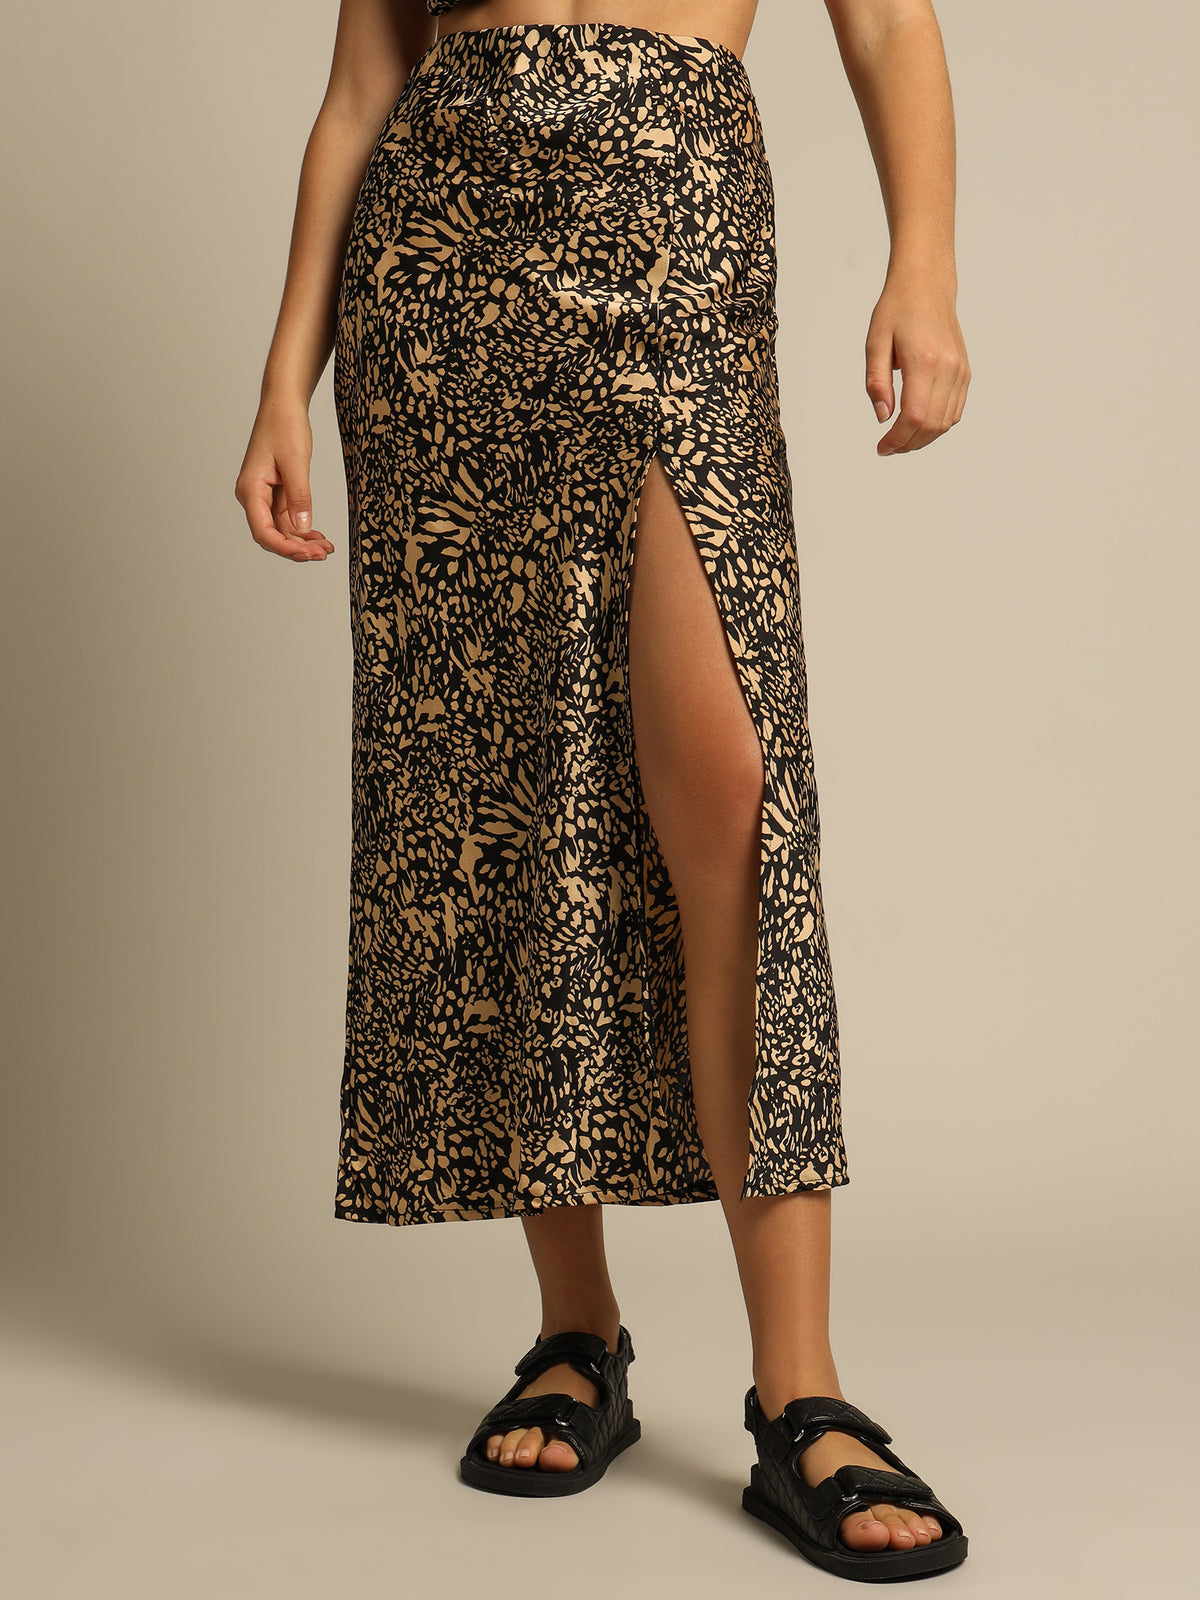 Shanti Maxi Skirt in Leopard